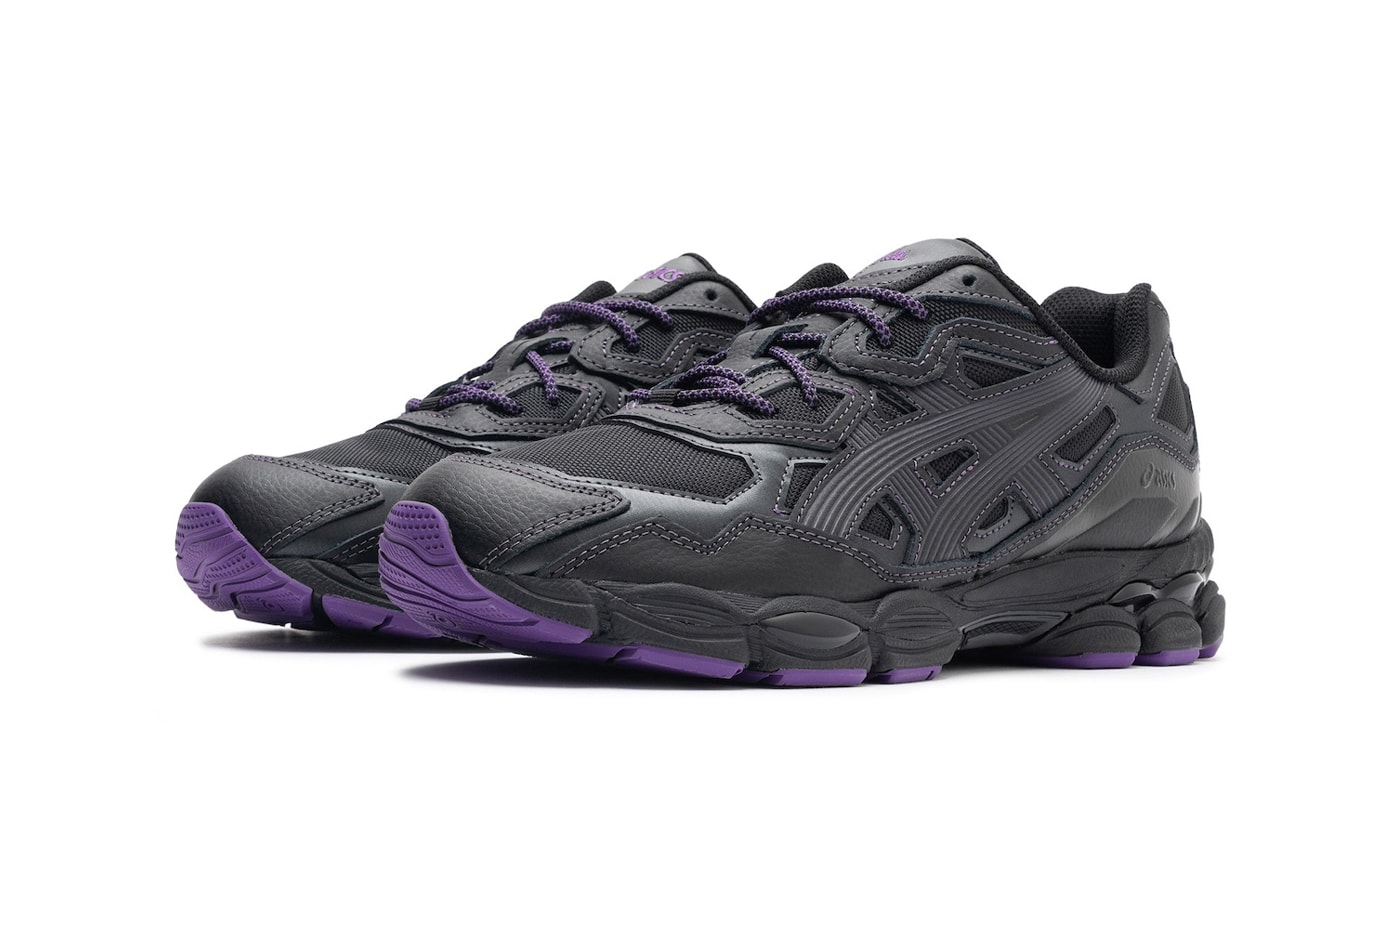 ニードルスとアシックスによる最新コラボGEL-NYC が登場 Official Look at the NEEDLES x ASICS GEL-NYC Collaboration 1201B008-001 release info black purple running shoe footwear